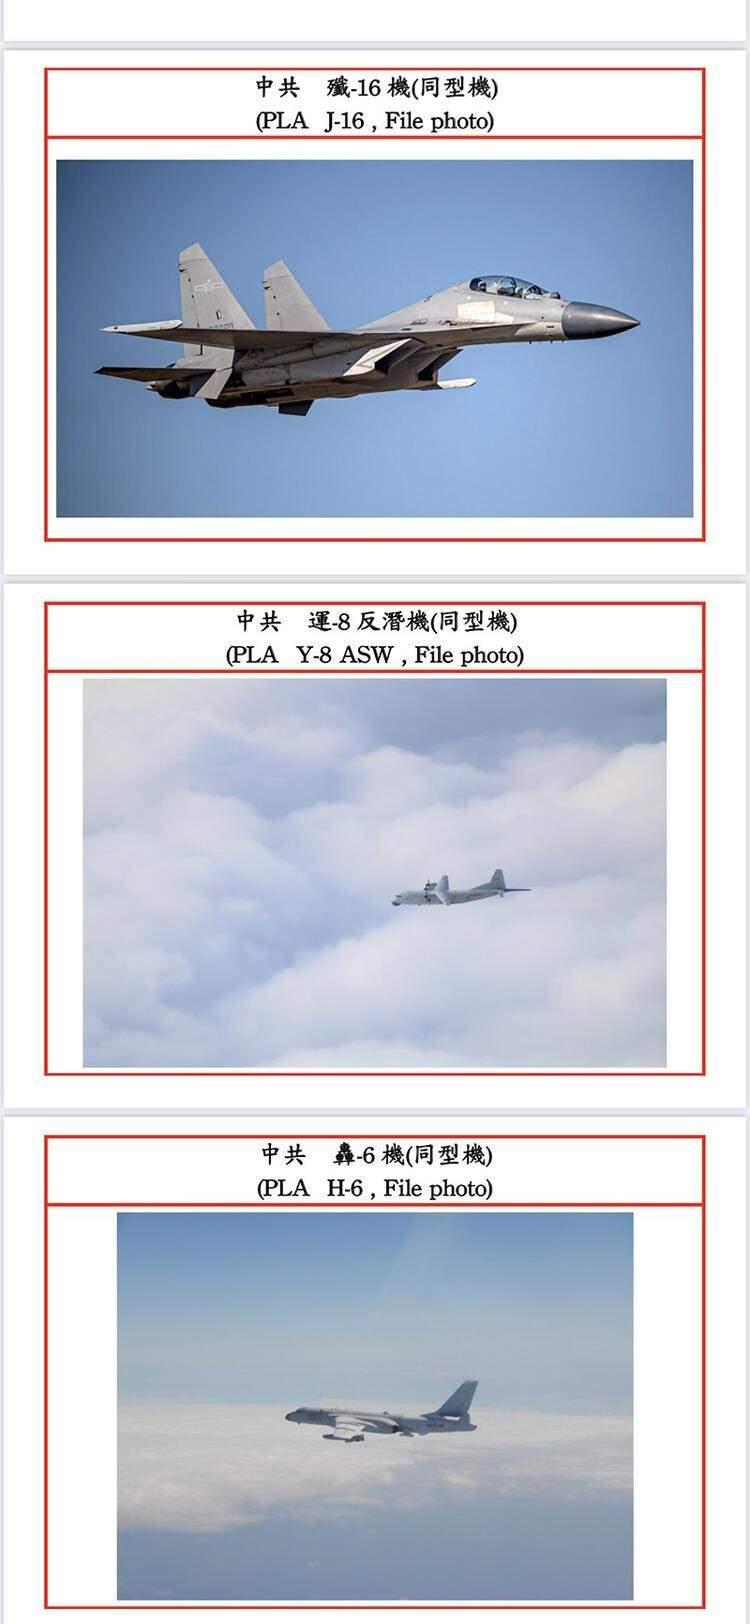 <p>Çin Halk Kurtuluş Ordusu'nun Tayvan'ın tanımlanmış hava sahasına gönderdiği savaş uçakları arasında bombardıman, denizaltı savar ve havadan erken uyarı sistemi vardı.</p>
